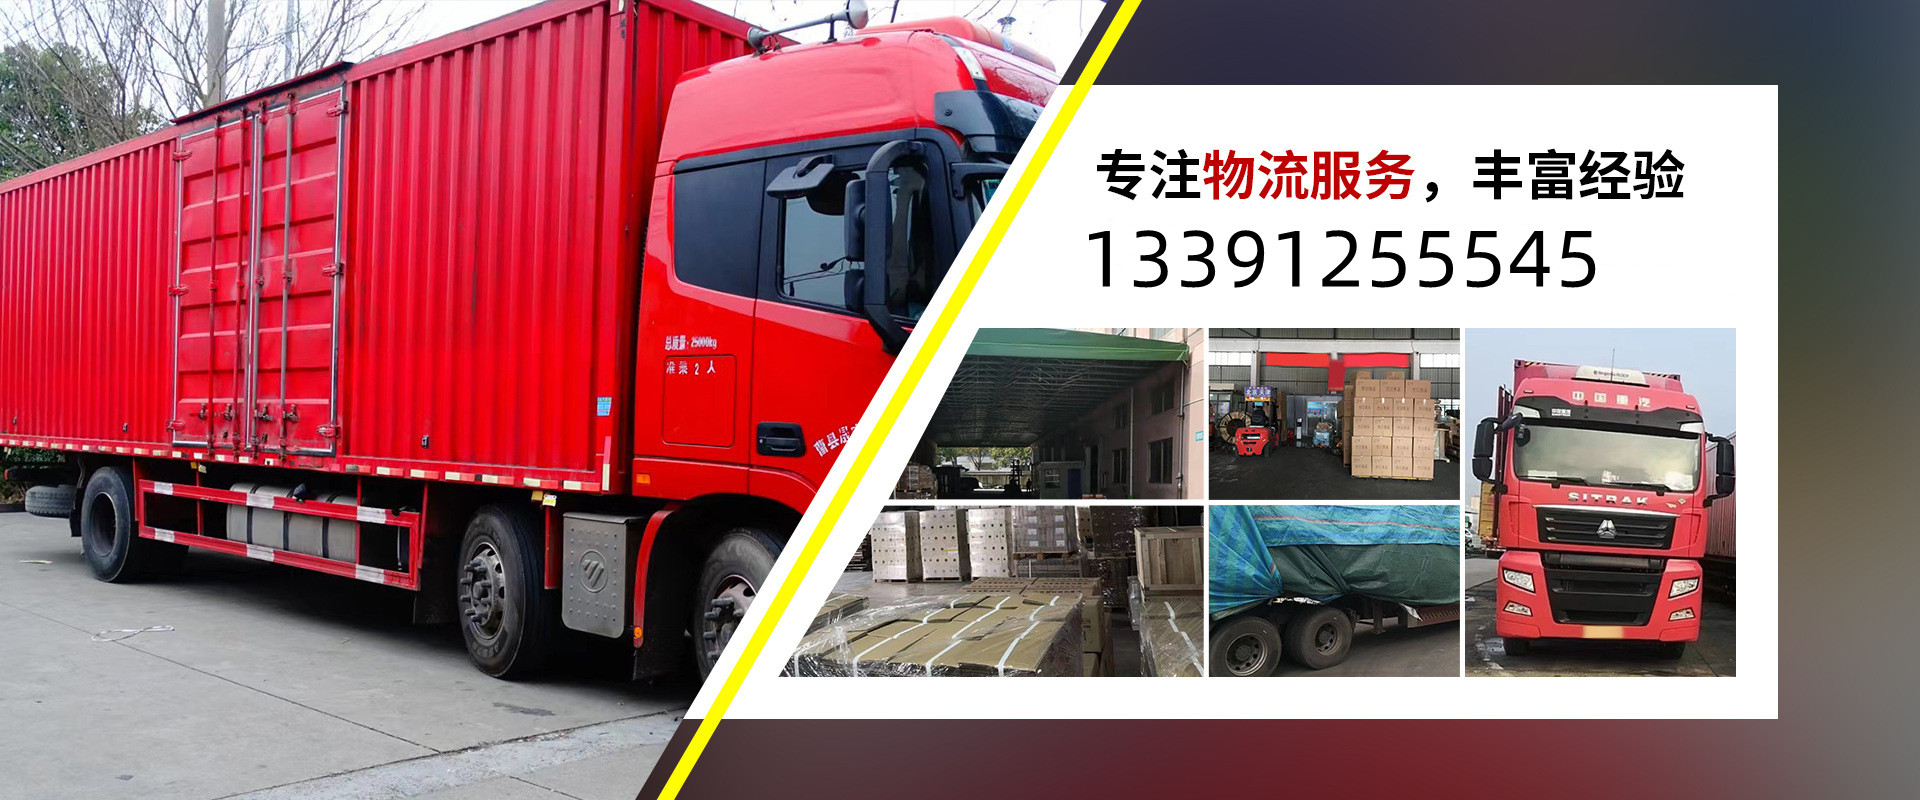 上海物流专线公司货运、本地上海物流专线公司货运、、上海物流专线公司货运